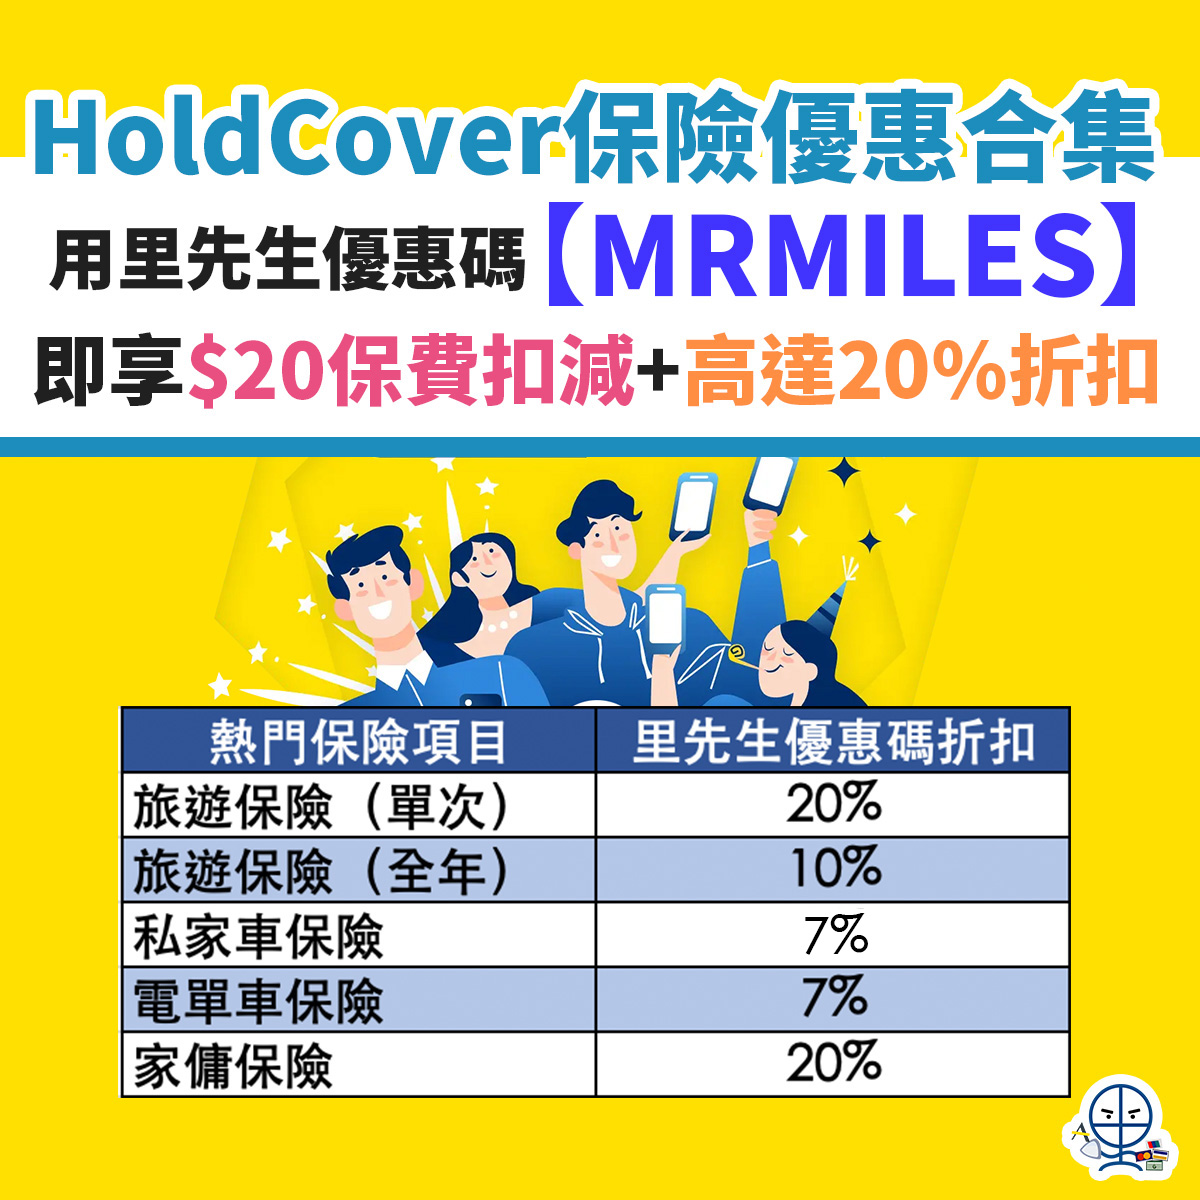 holdcover-保險-里先生-優惠-汽車保-旅遊保-折扣-4